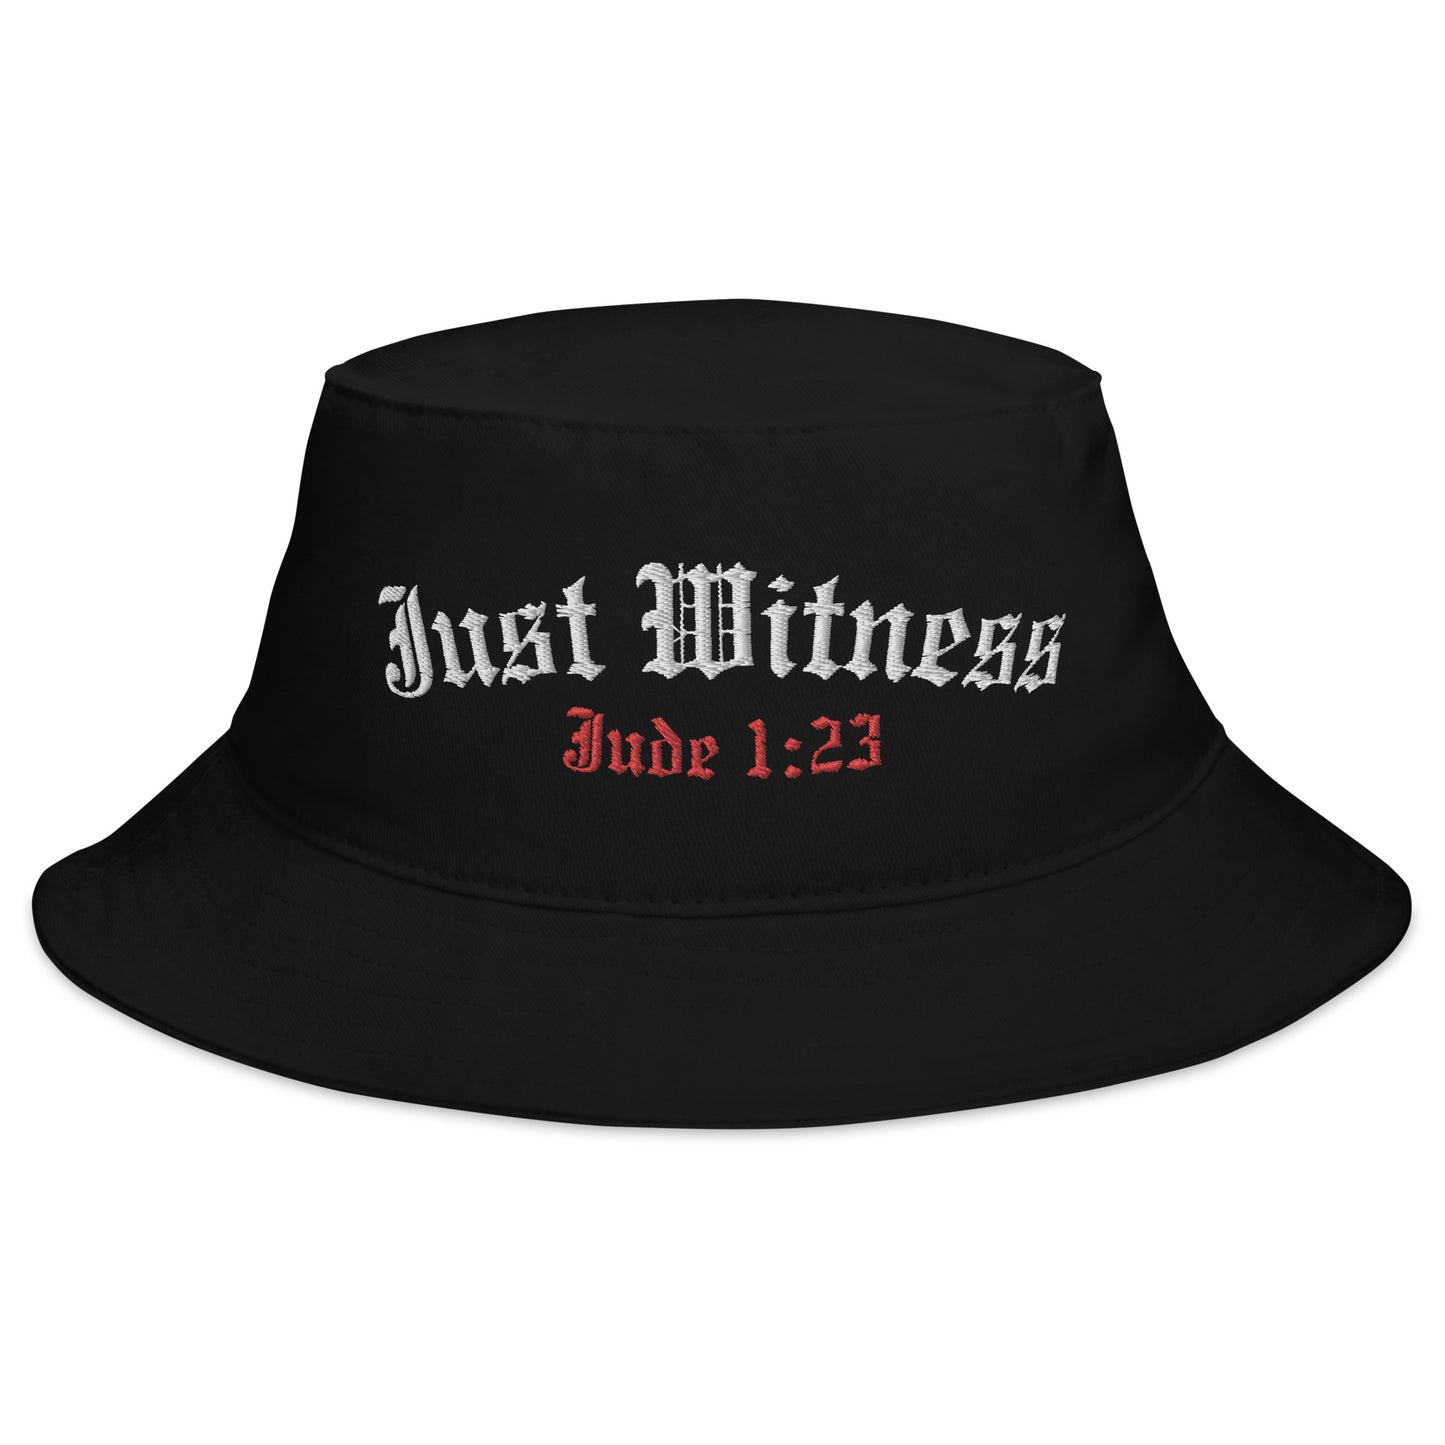 JUST WITNESS Jude 1:23 Bucket Hat